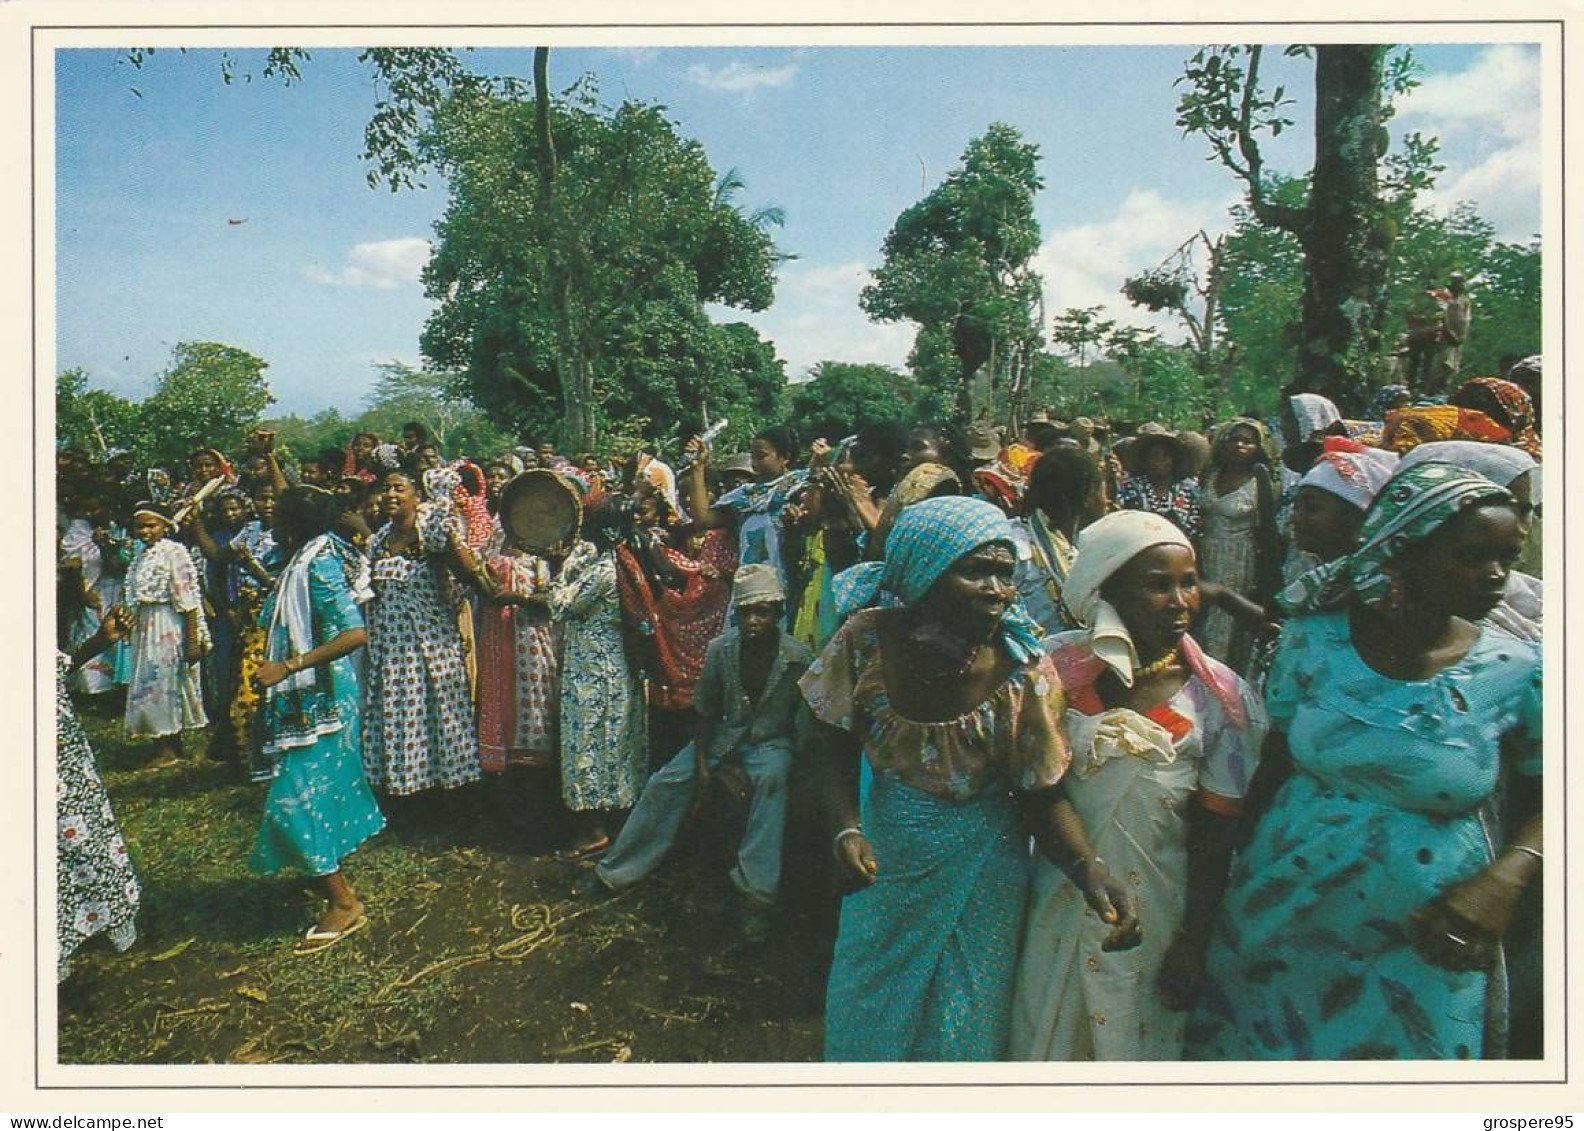 GRANDE COMORES NGAZIDJA DANSE DU PILON WADAHA + FEMMES EN FETE + PLAGE ET HOTEL ITSANDRA 1988 - Comorre